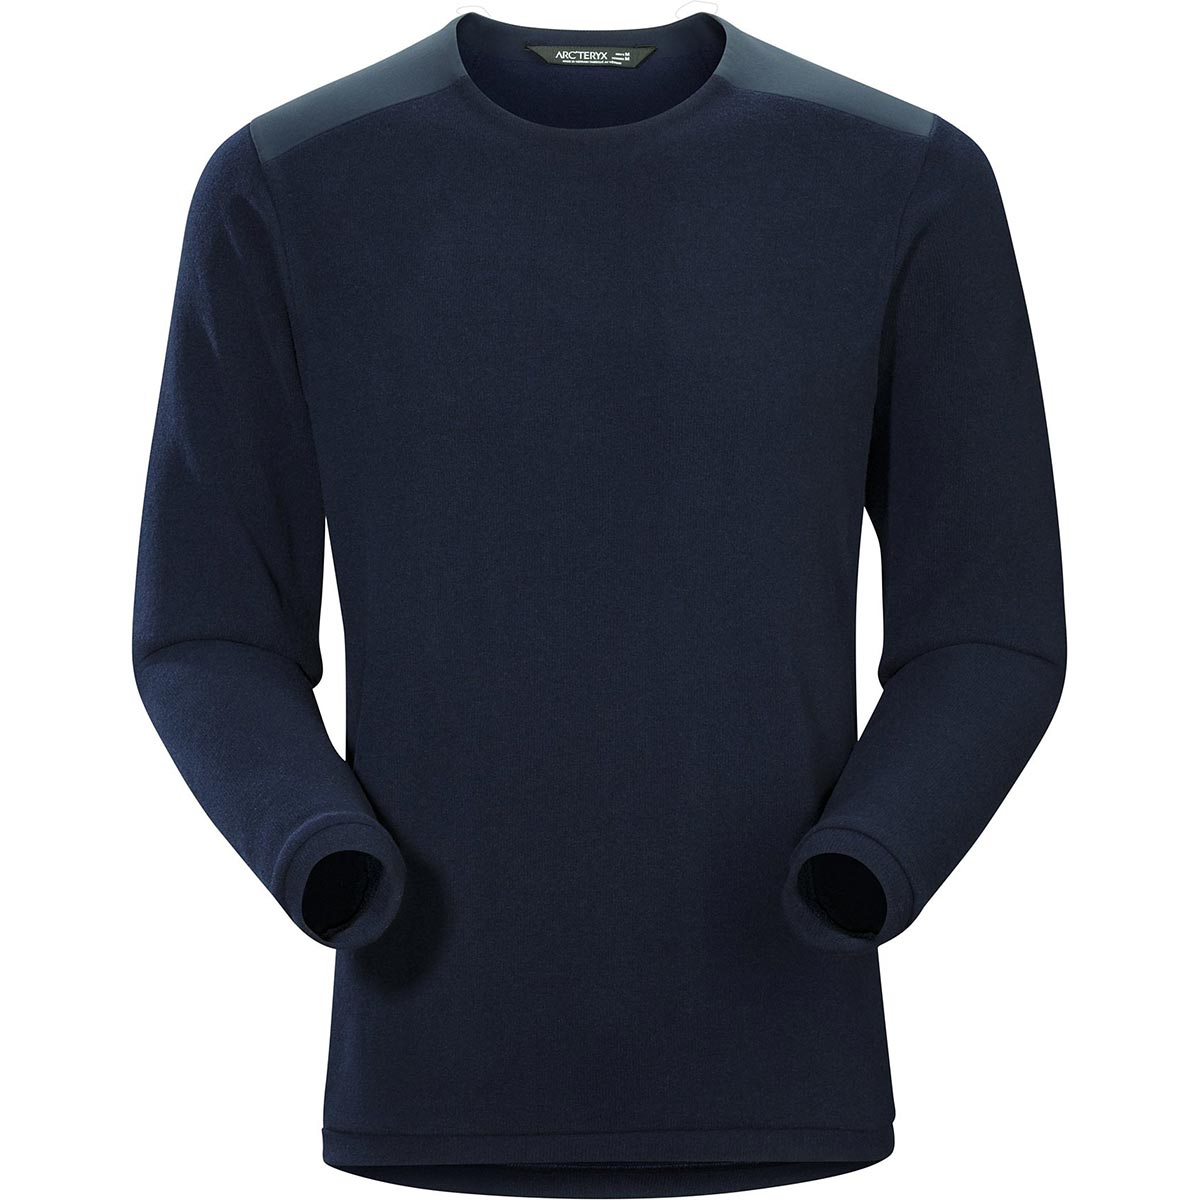 Arc'teryx Donavan Crew Neck Sweater, men's, Fall 2019 model ...